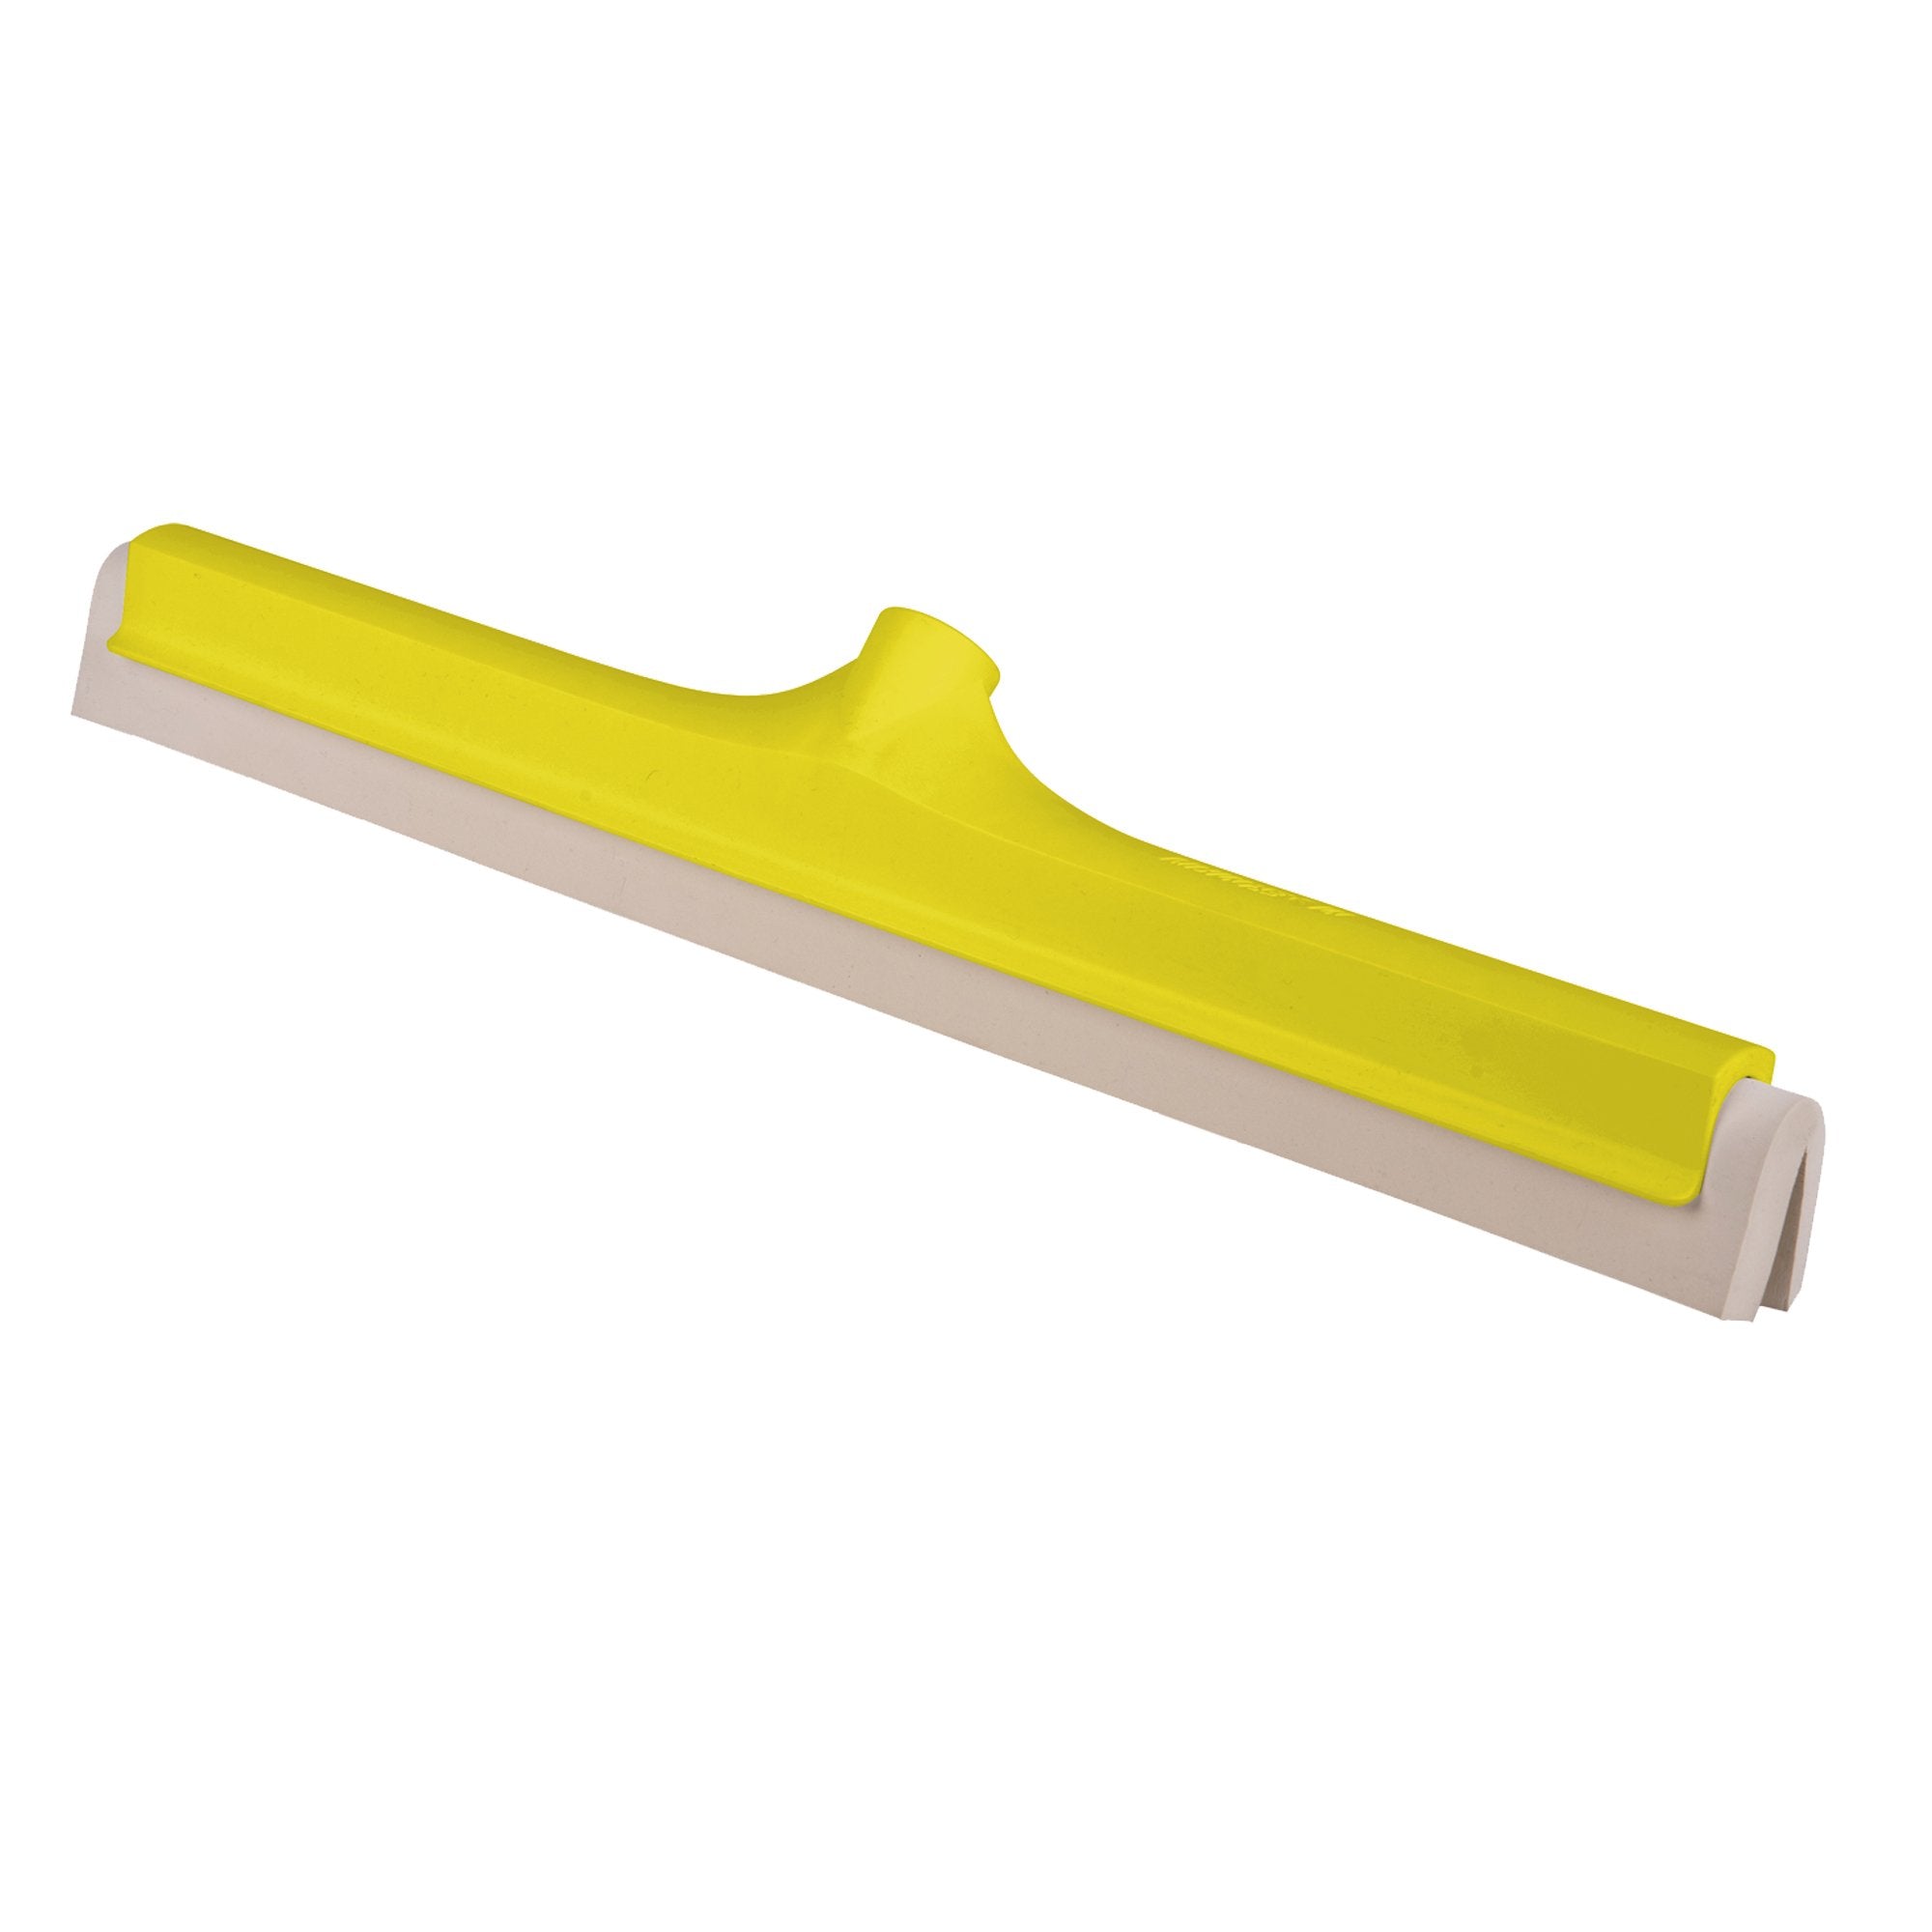 la-briantina-professional-spingiacqua-45cm-haccp-colore-giallo